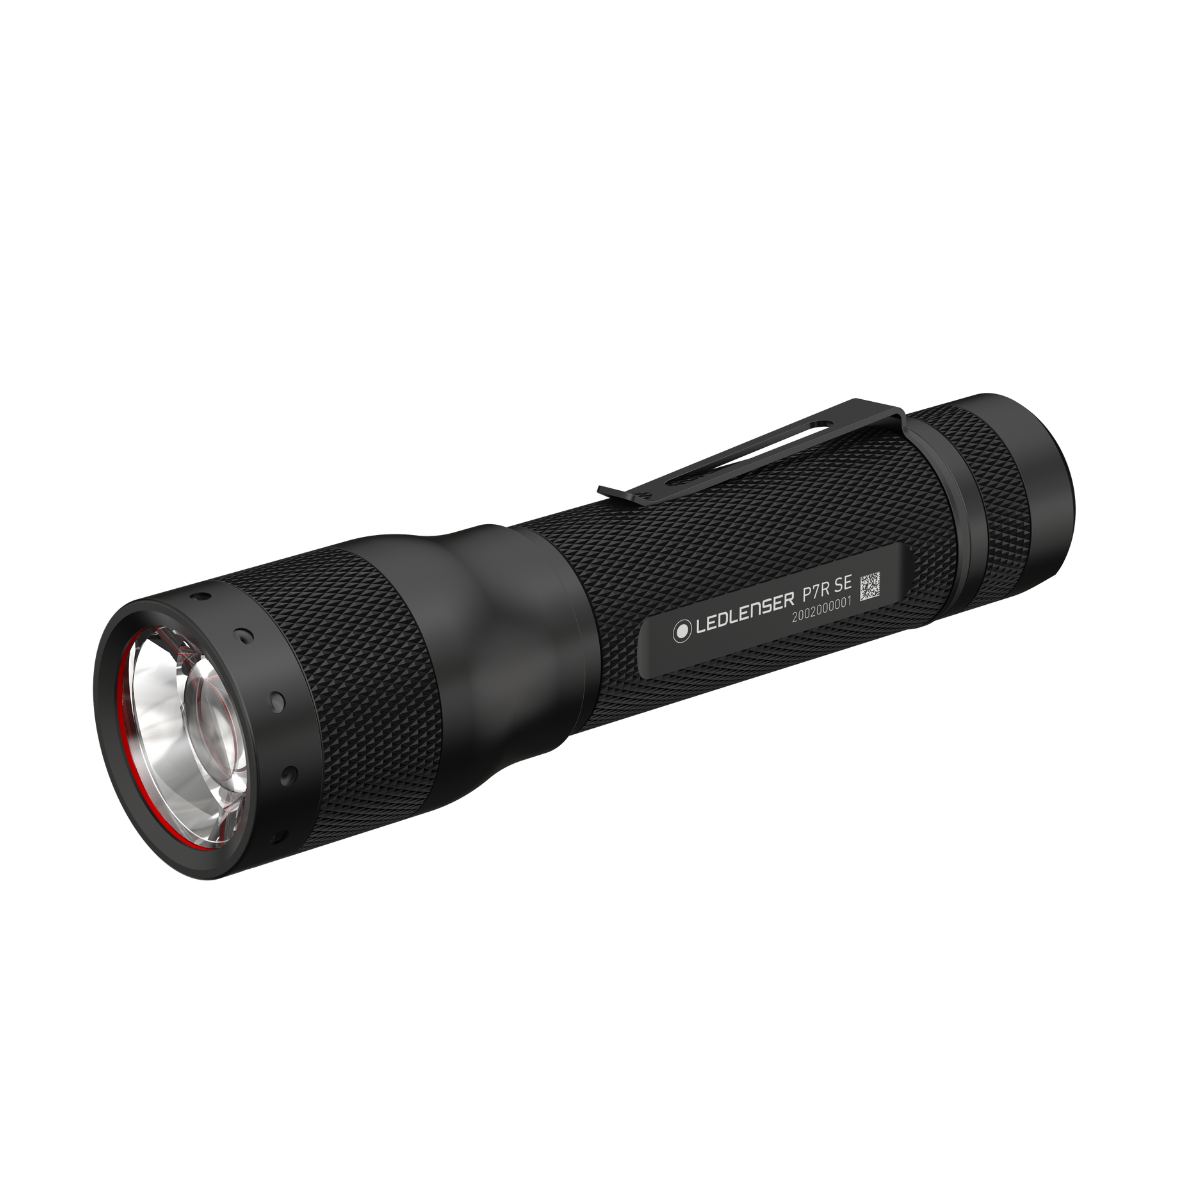 Ledlenser P7R SE Flashlight | Ledlenser USA